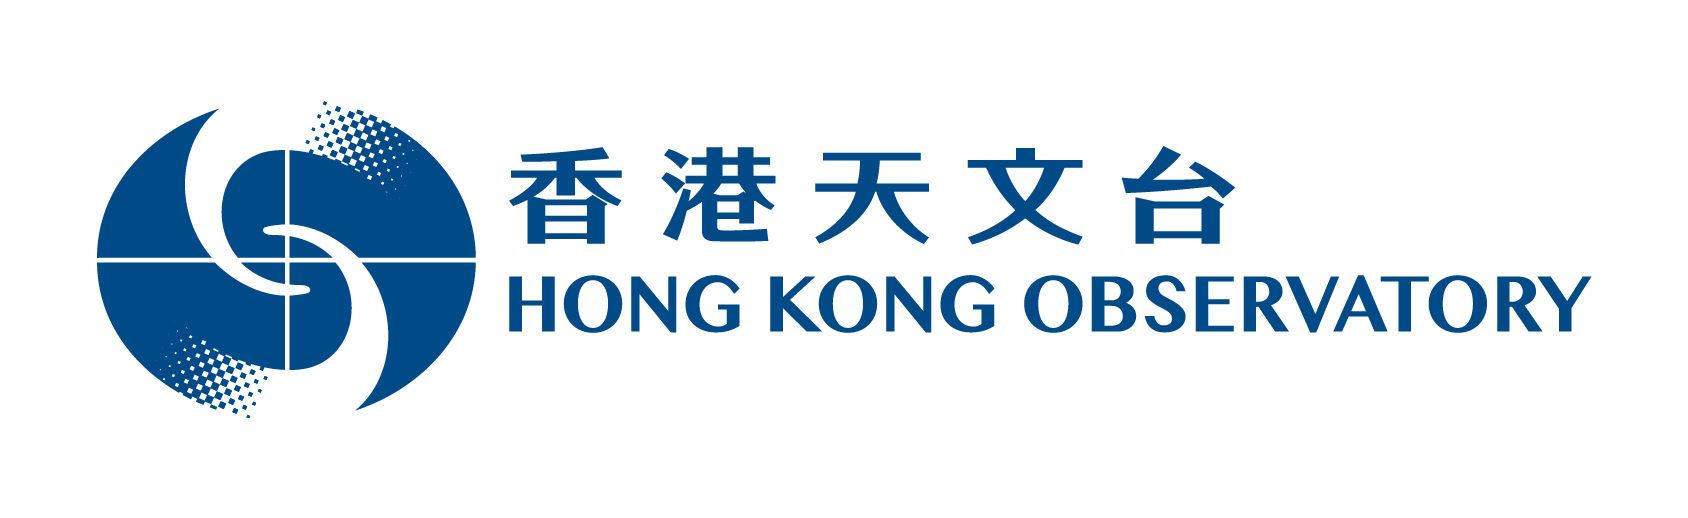 香港天文台標誌